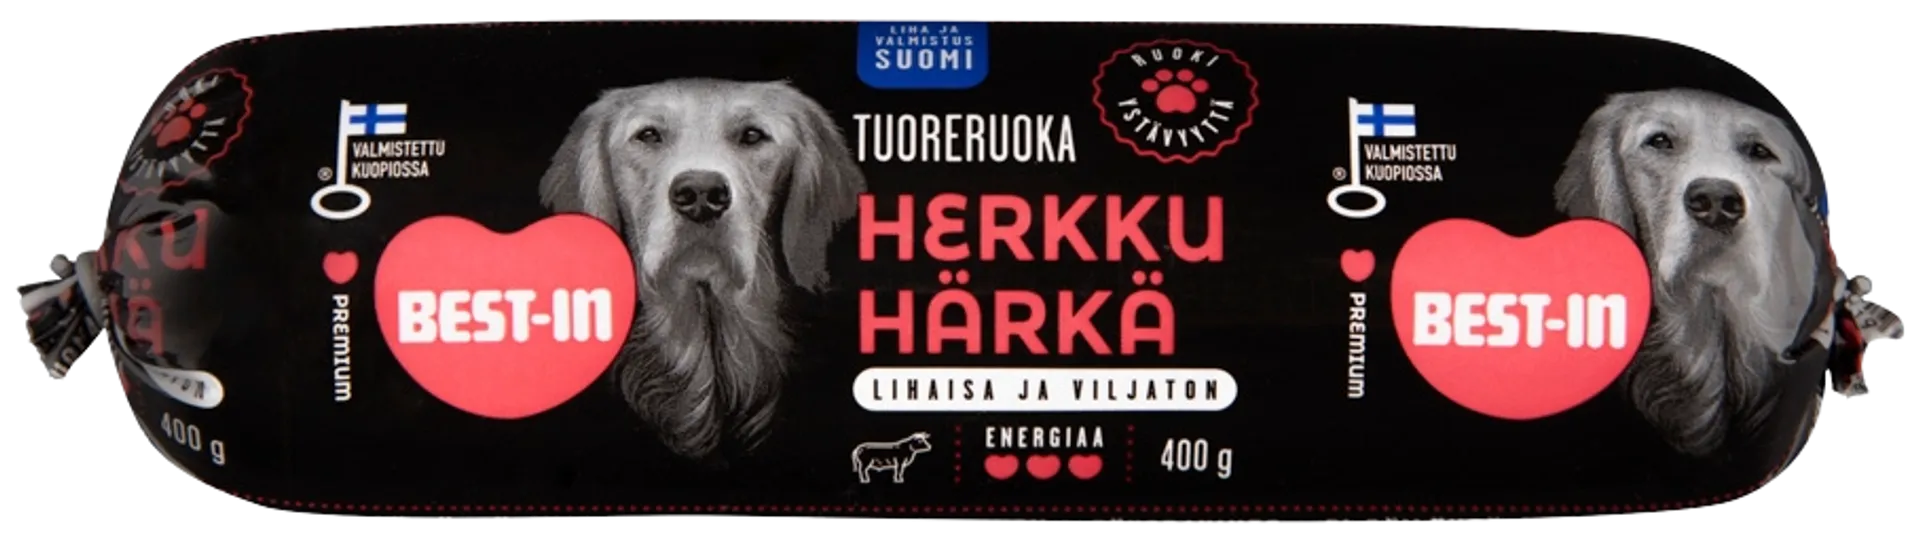 Best-In Herkku Härkä Koiran Tuoreruoka 400g - 1